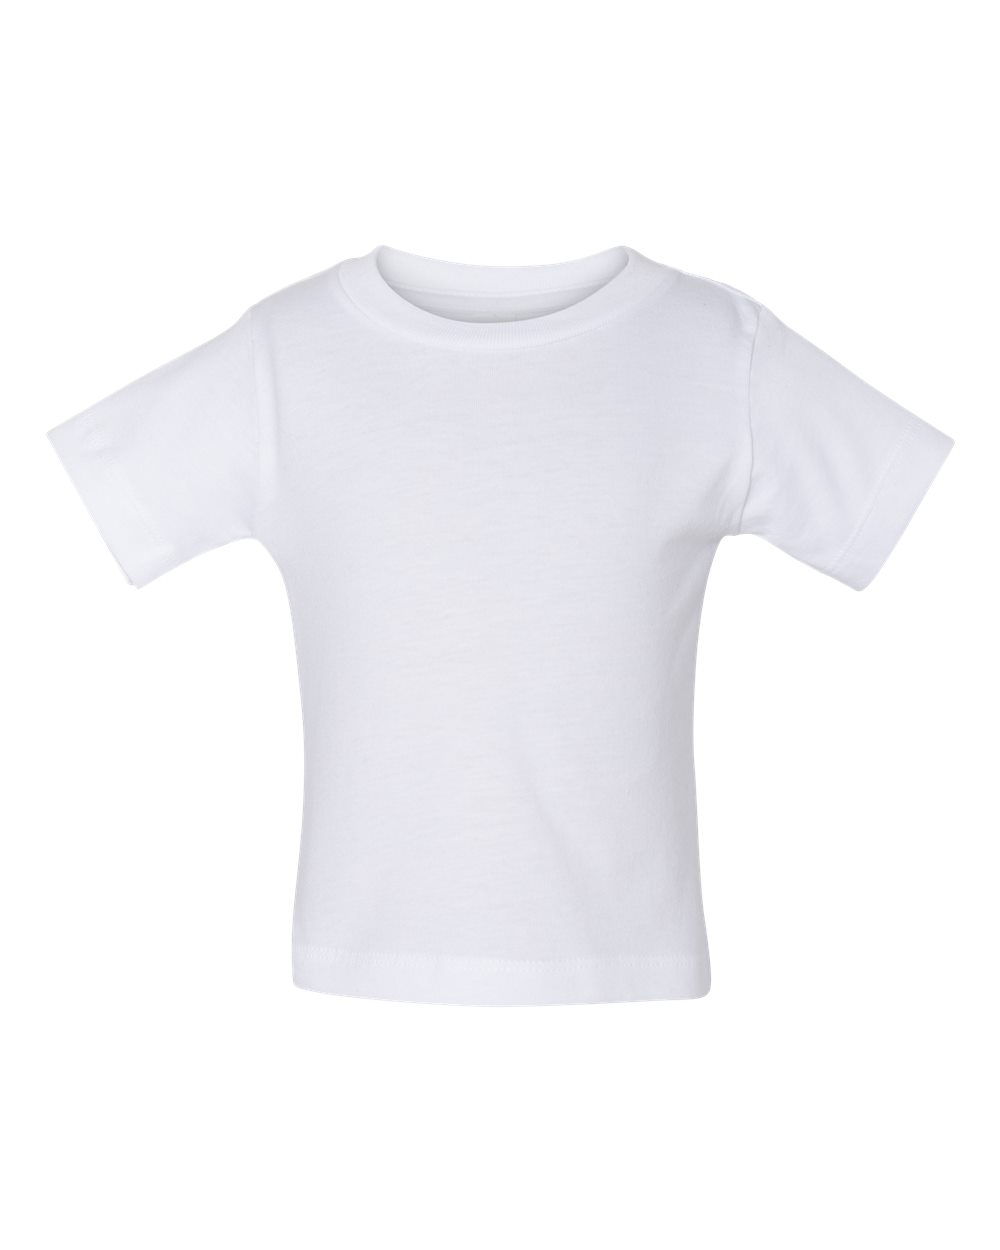 BASIC TEES INFANT T-Shirt Colors Ringspun Cotton Plain Colors 6 12 18 24 MONTHS 